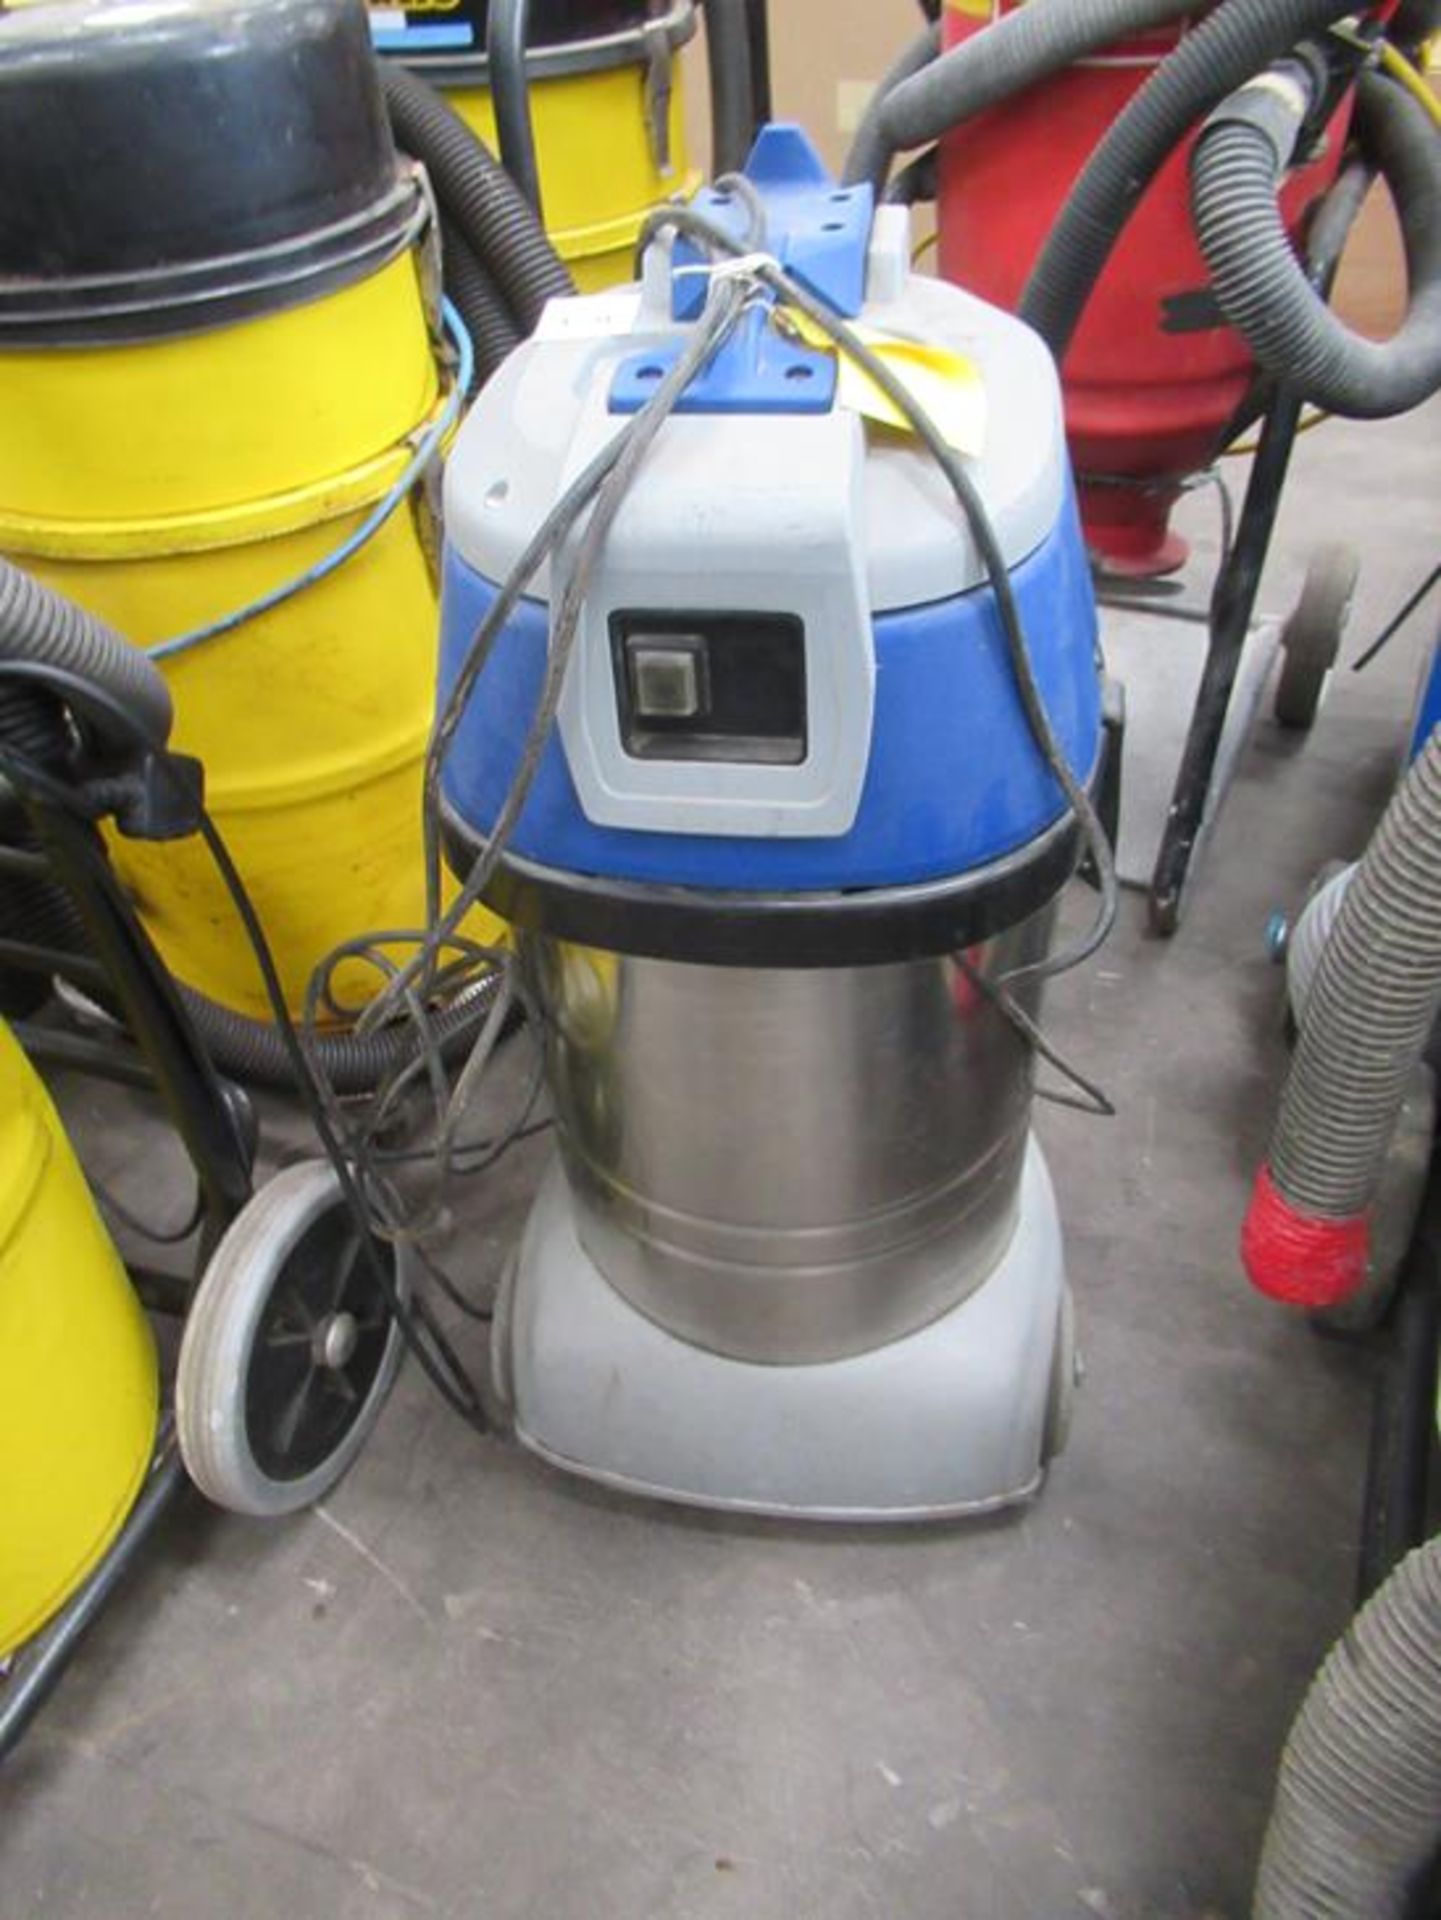 A V-Tuf Vacuum (No Hose) 240V - Image 2 of 2